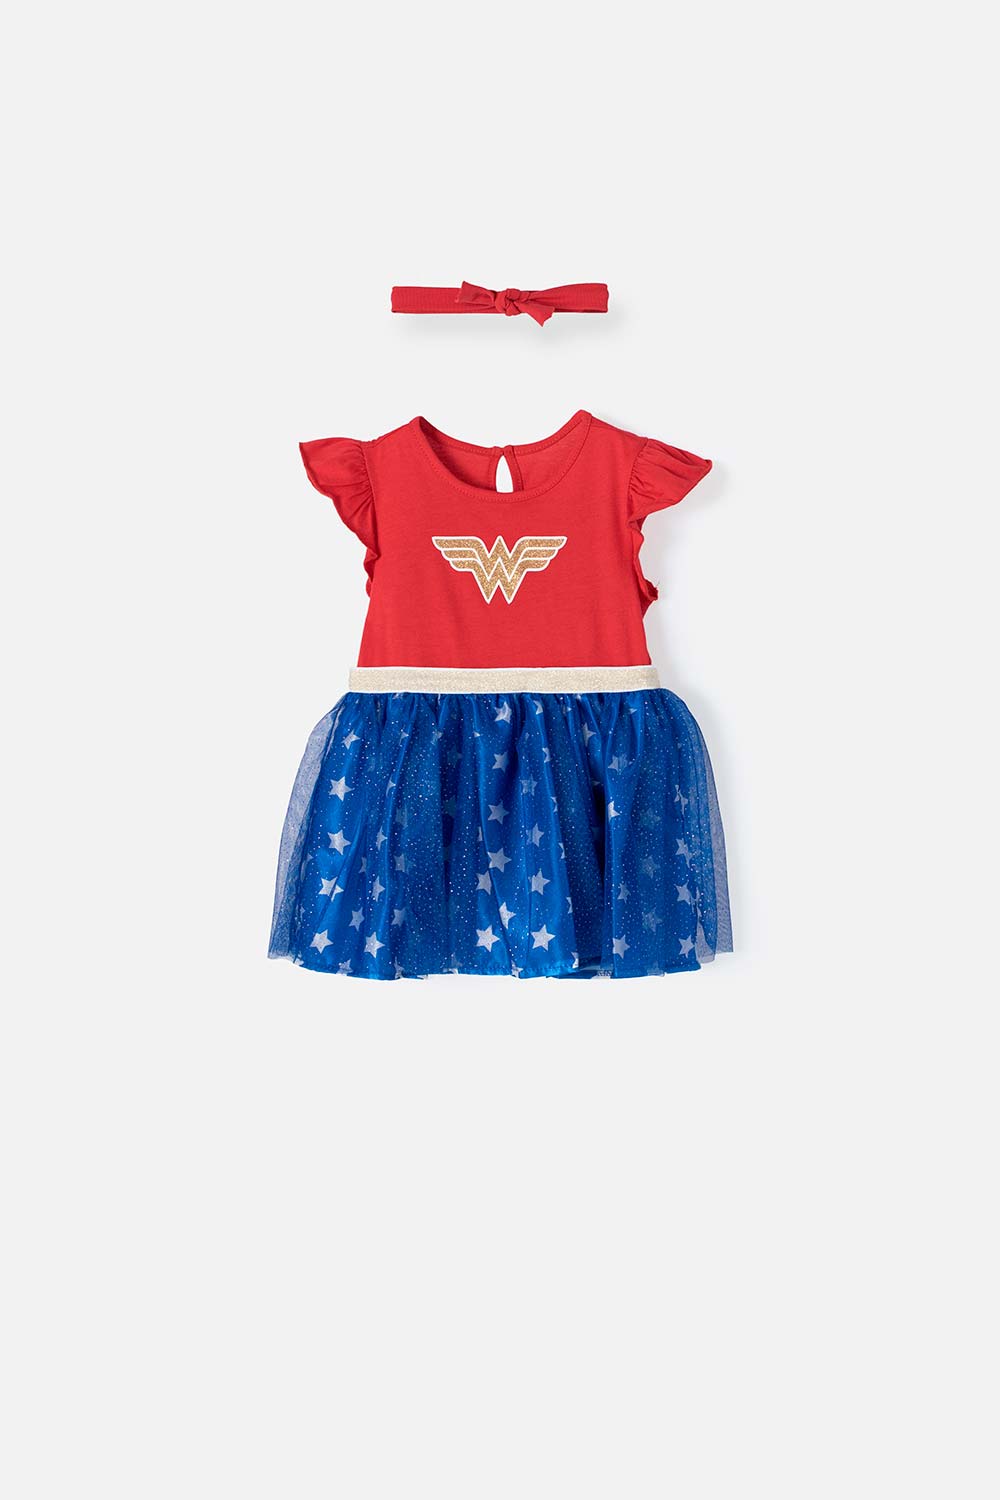 Vestido tutú rojo de Wonder Woman para bebé niña 9-12-0